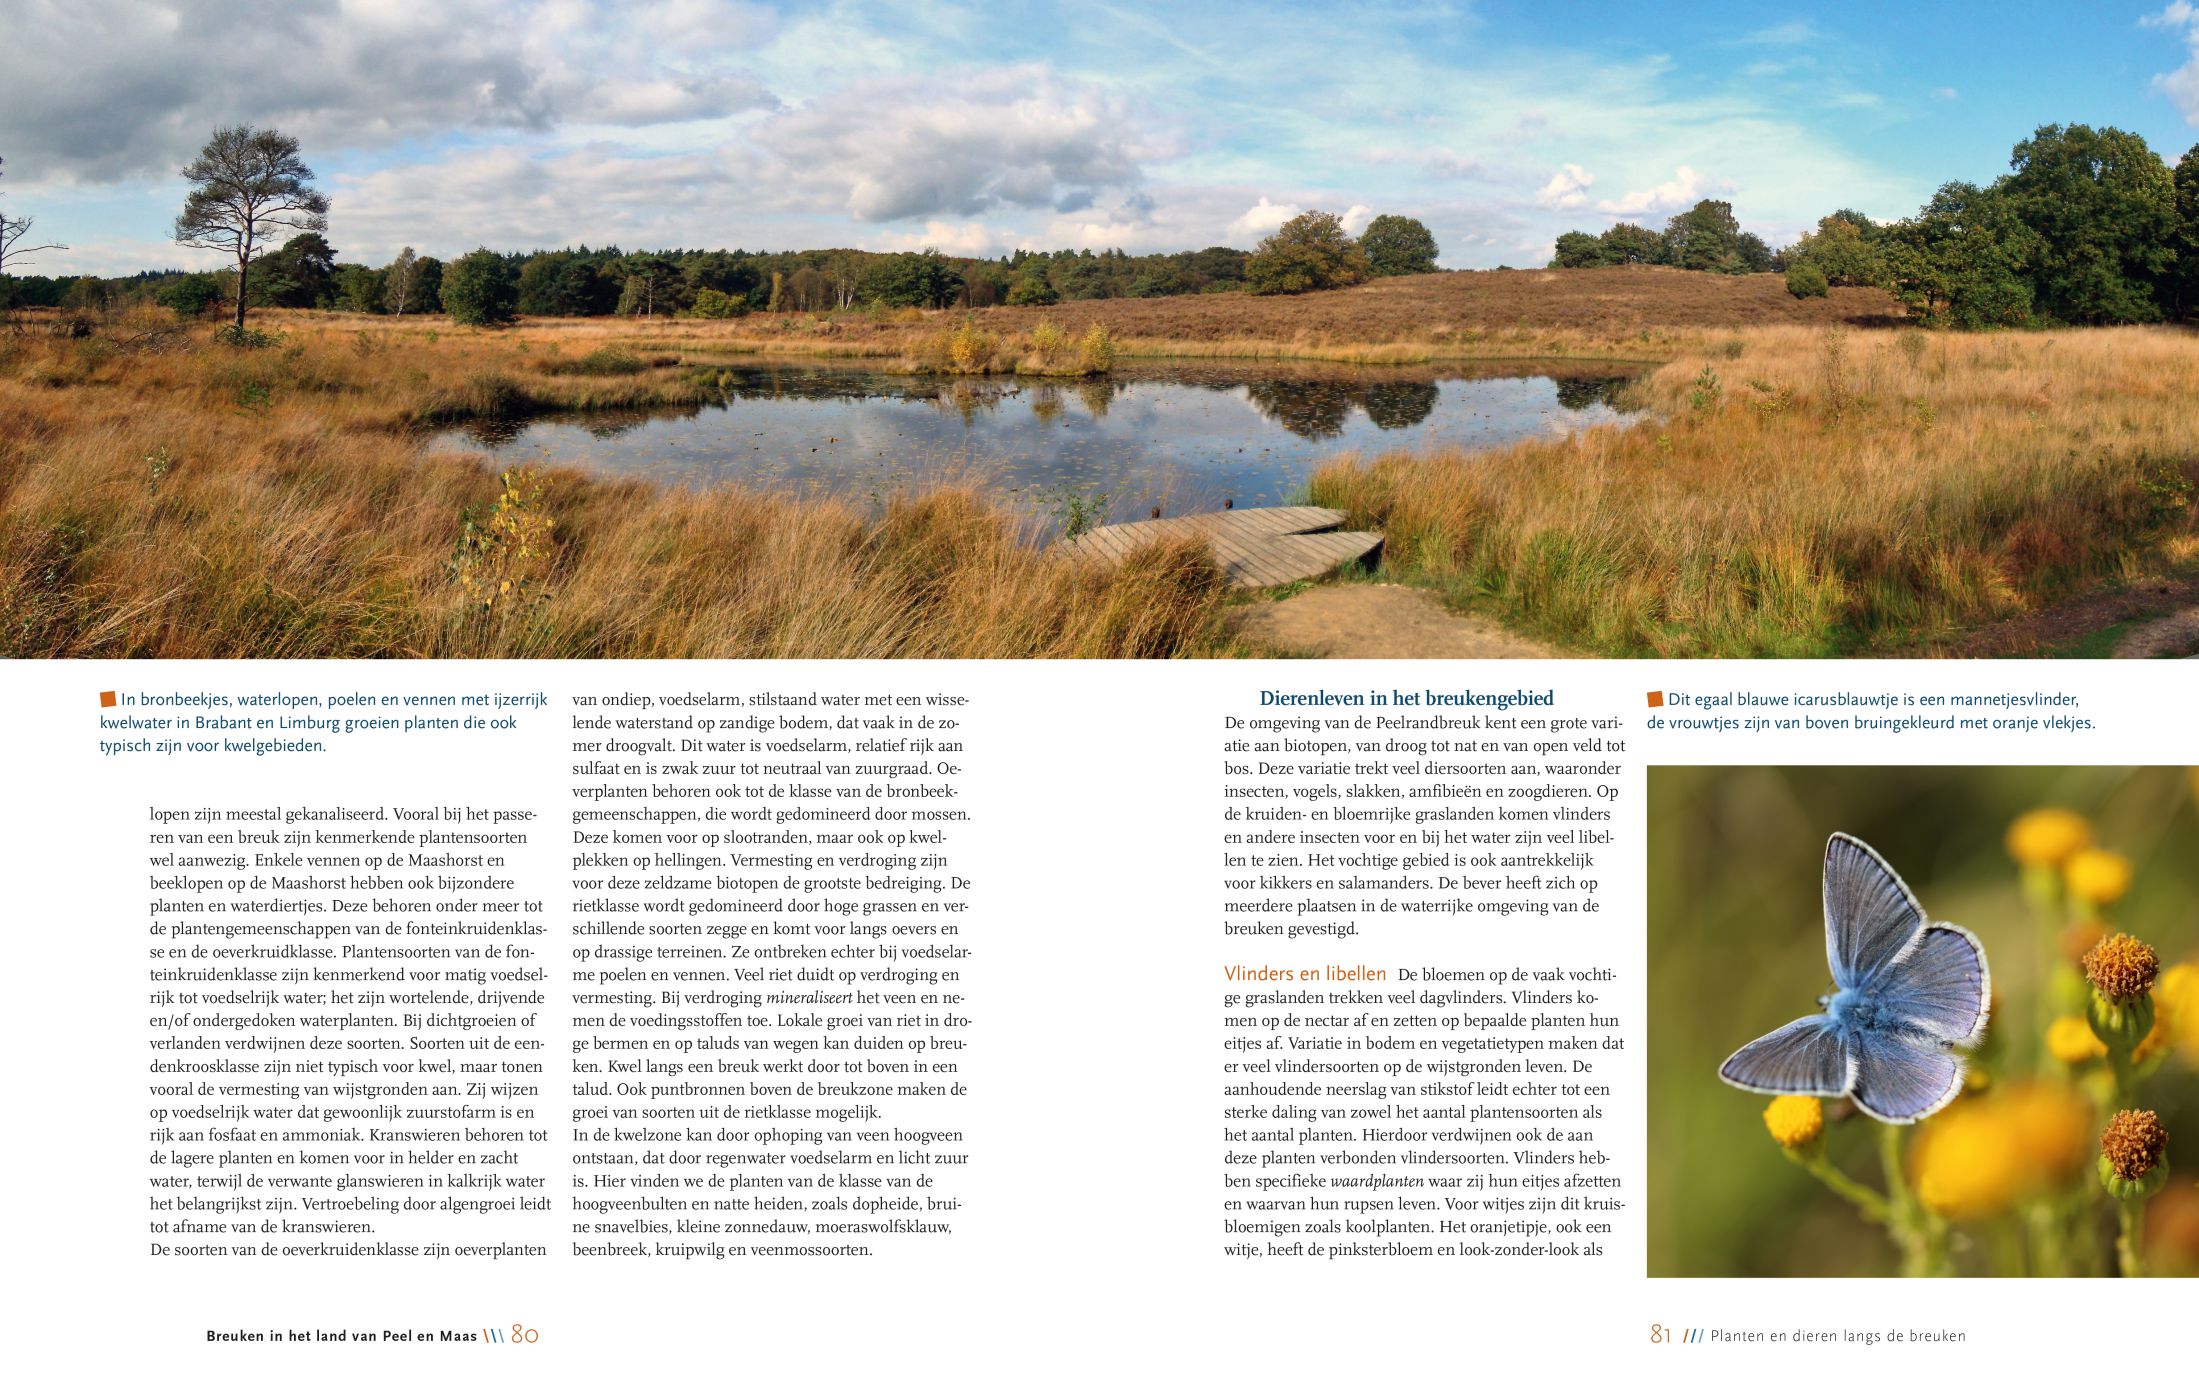 Inkijkexemplaar van het boek: <em>Breuken in het land van Peel en Maas</em> - © Uitgeverij Matrijs